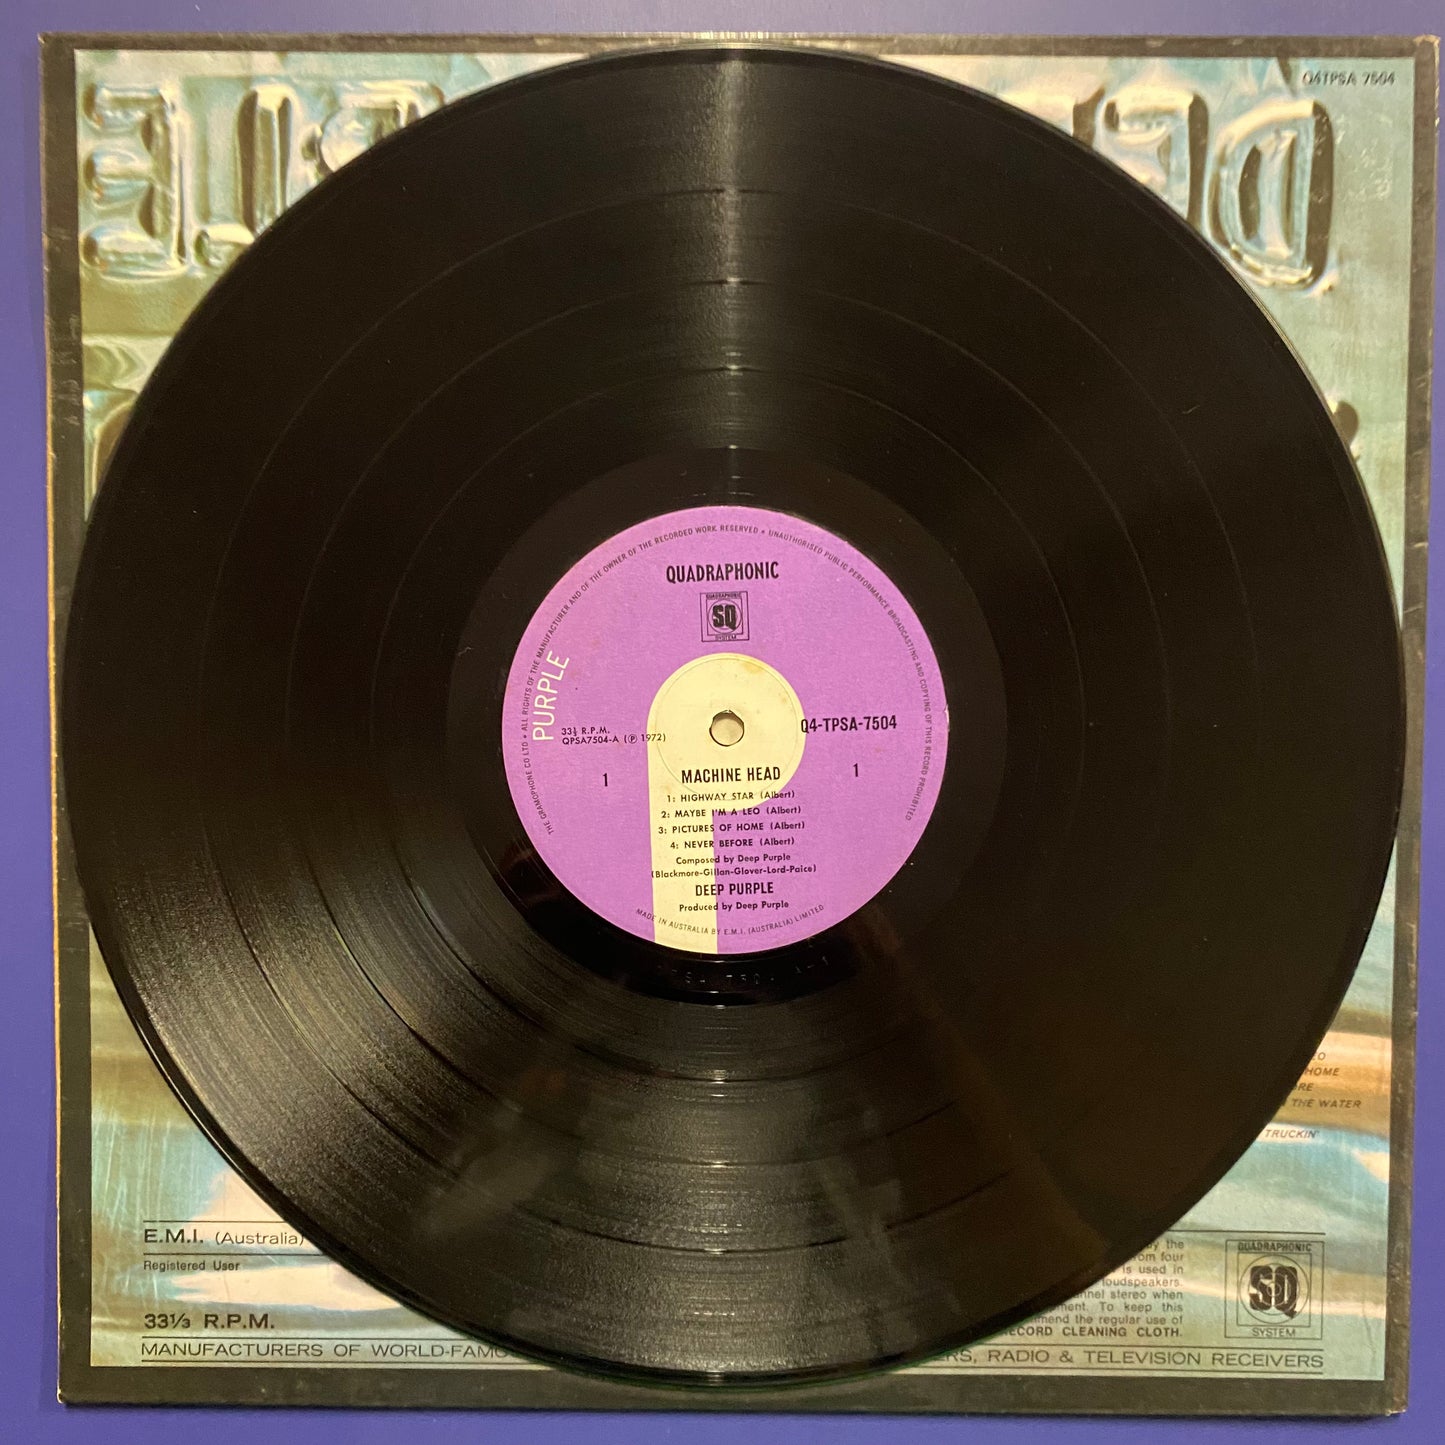 Deep Purple - Machine Head (LP, Album, Quad)